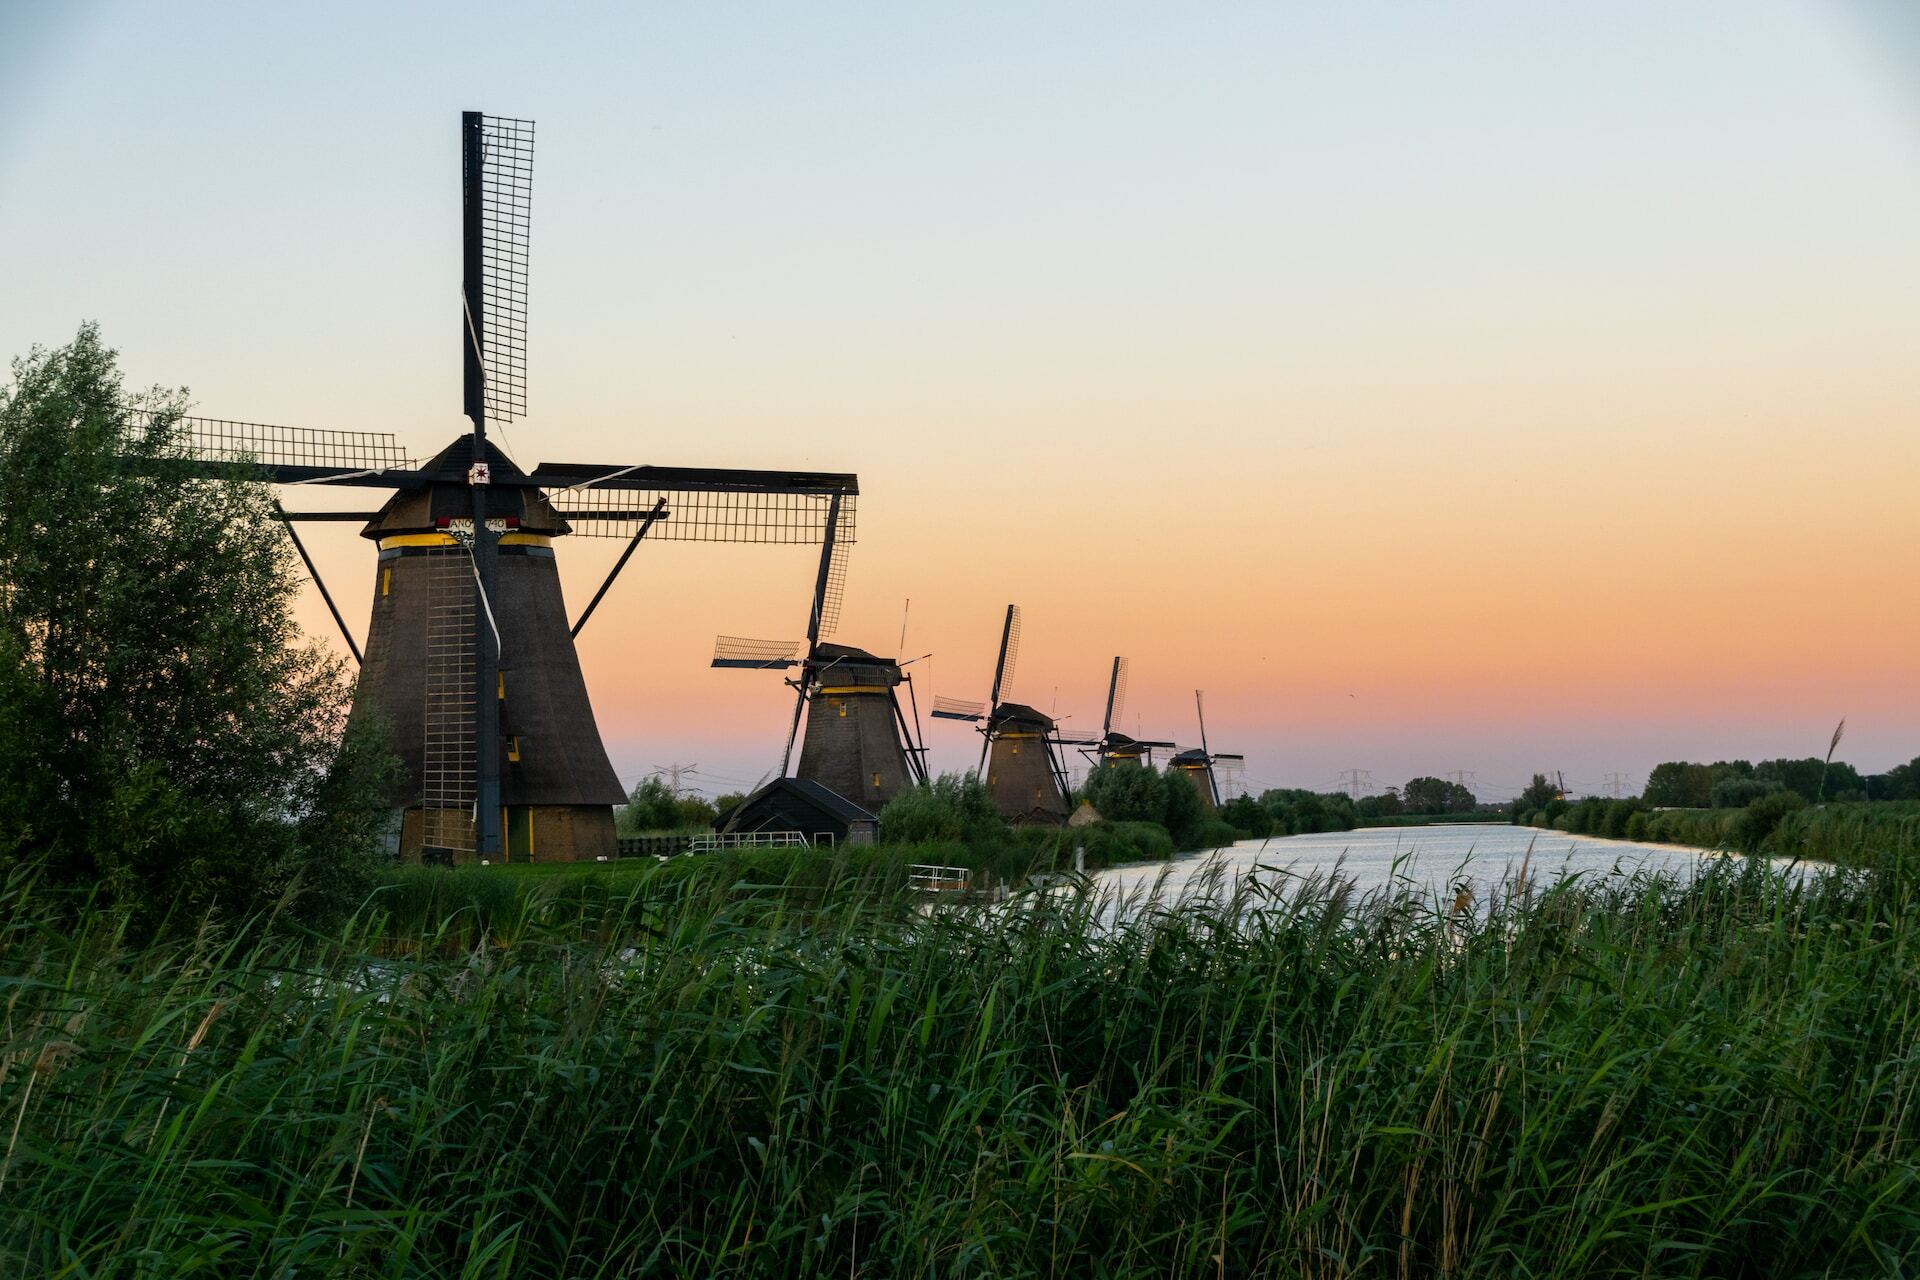 A row of five Dutch windmills